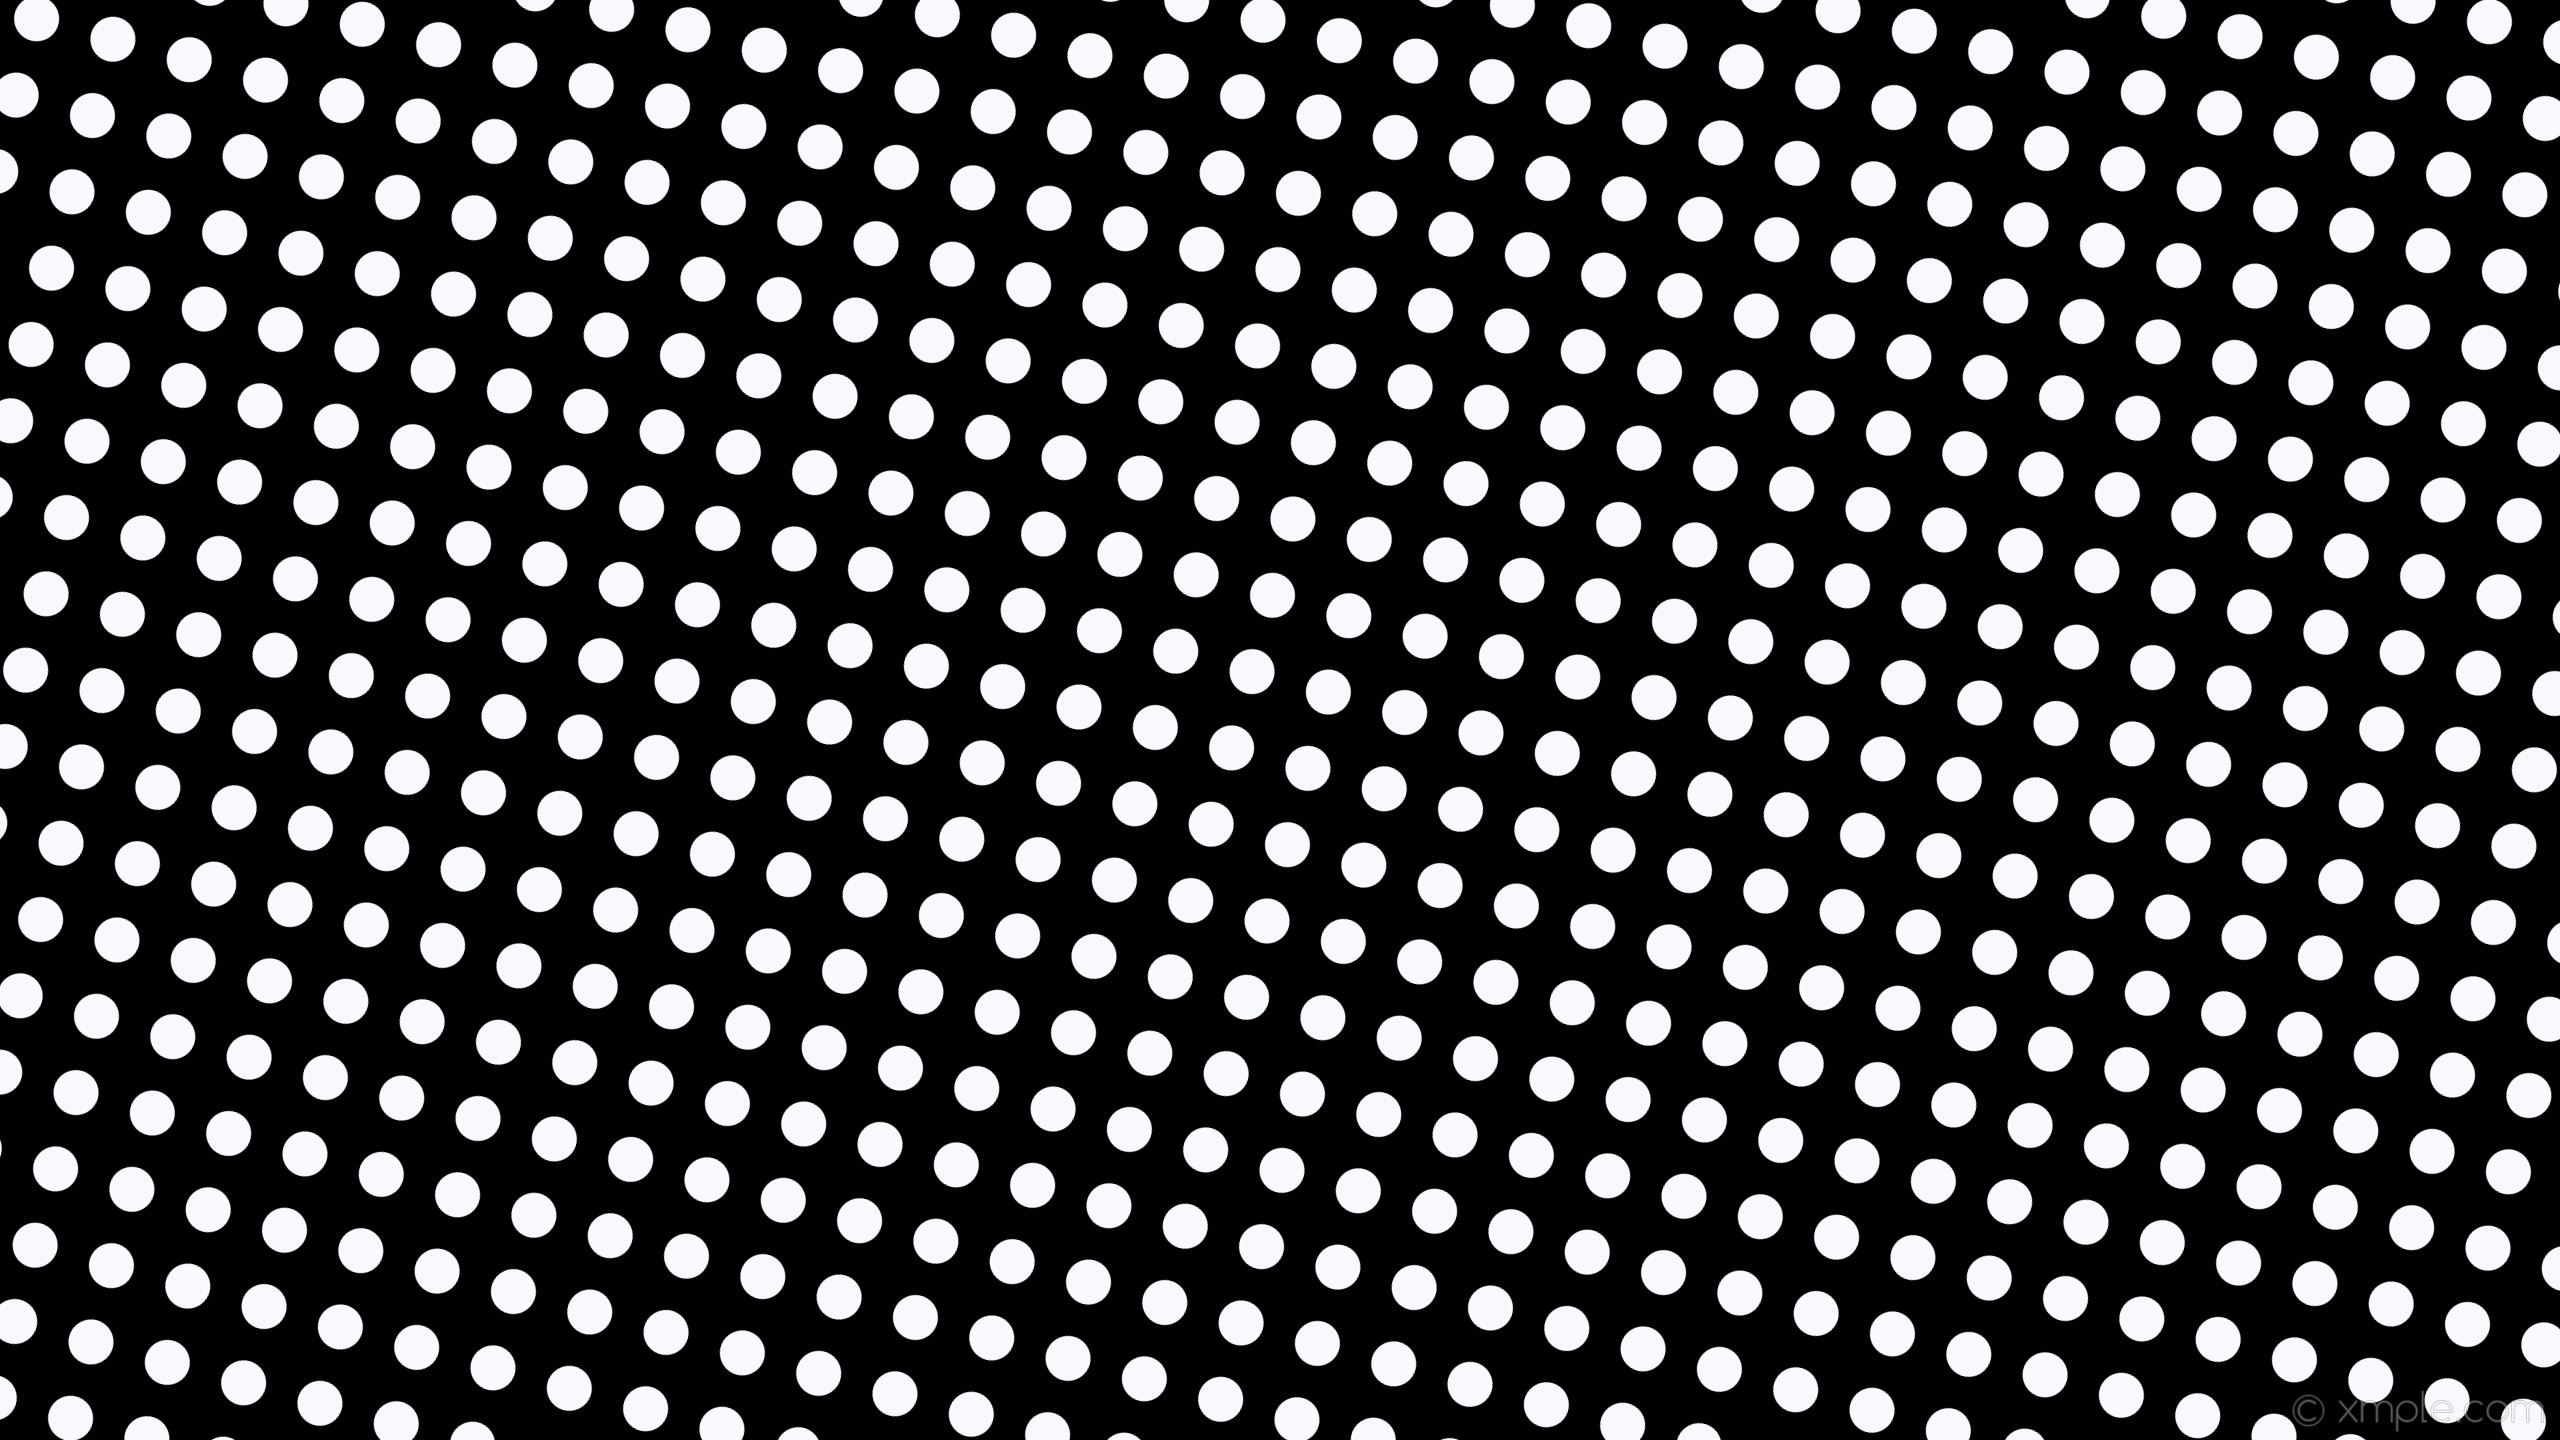 2560x1440 wallpaper white black spots polka dots ghost white #000000 #f8f8ff 345Â°  45px 79px